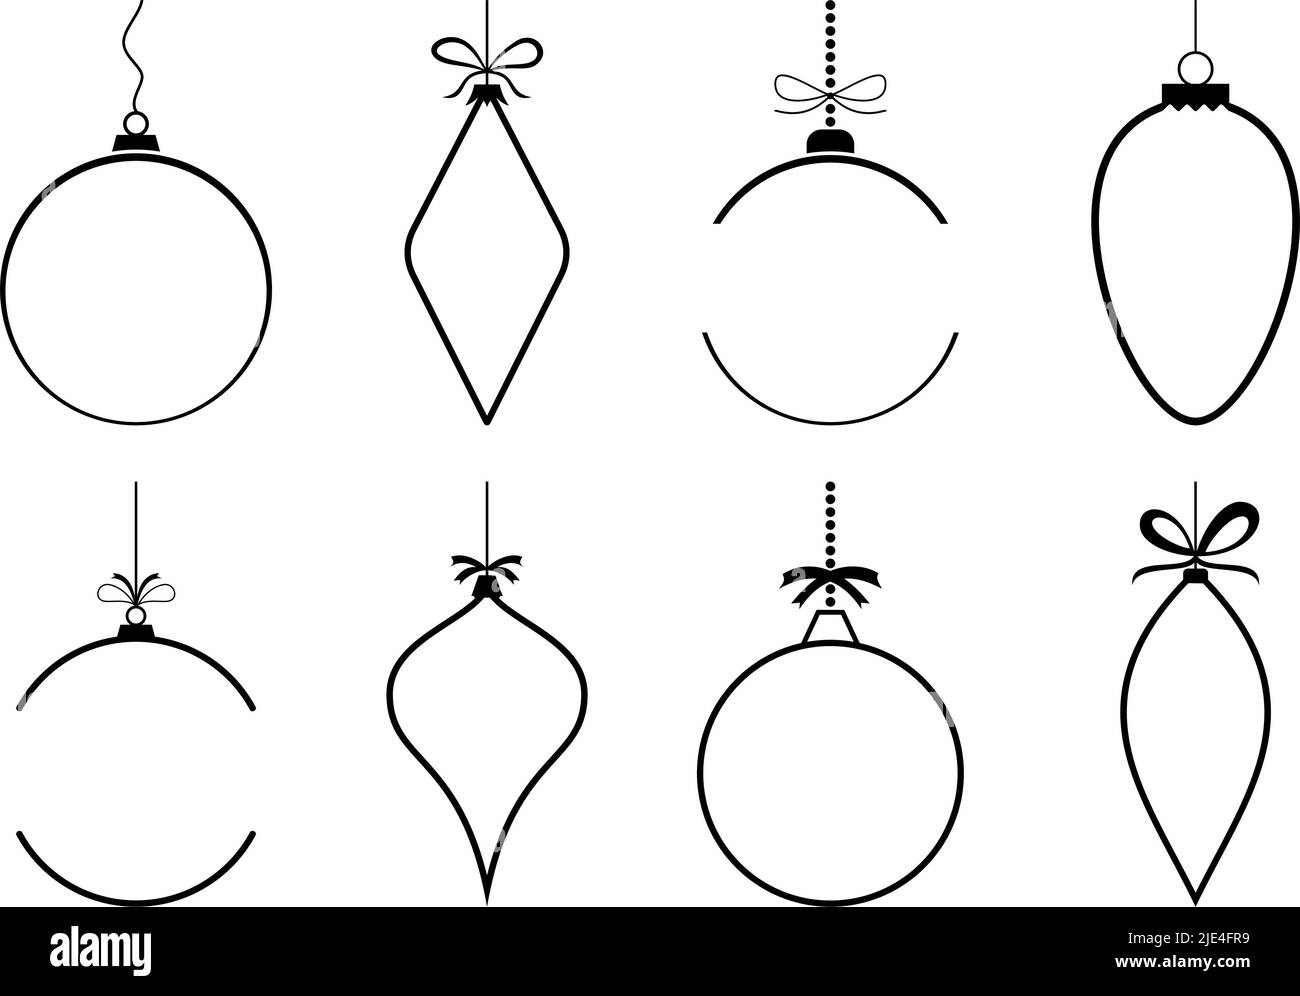 Weihnachtskugel. Set aus acht leeren Kugeln in Schwarz. Weißer Hintergrund. Blanke Weihnachtskugel Orna mit Aufhänger für eigene Text- und Designanforderungen. Stock Vektor